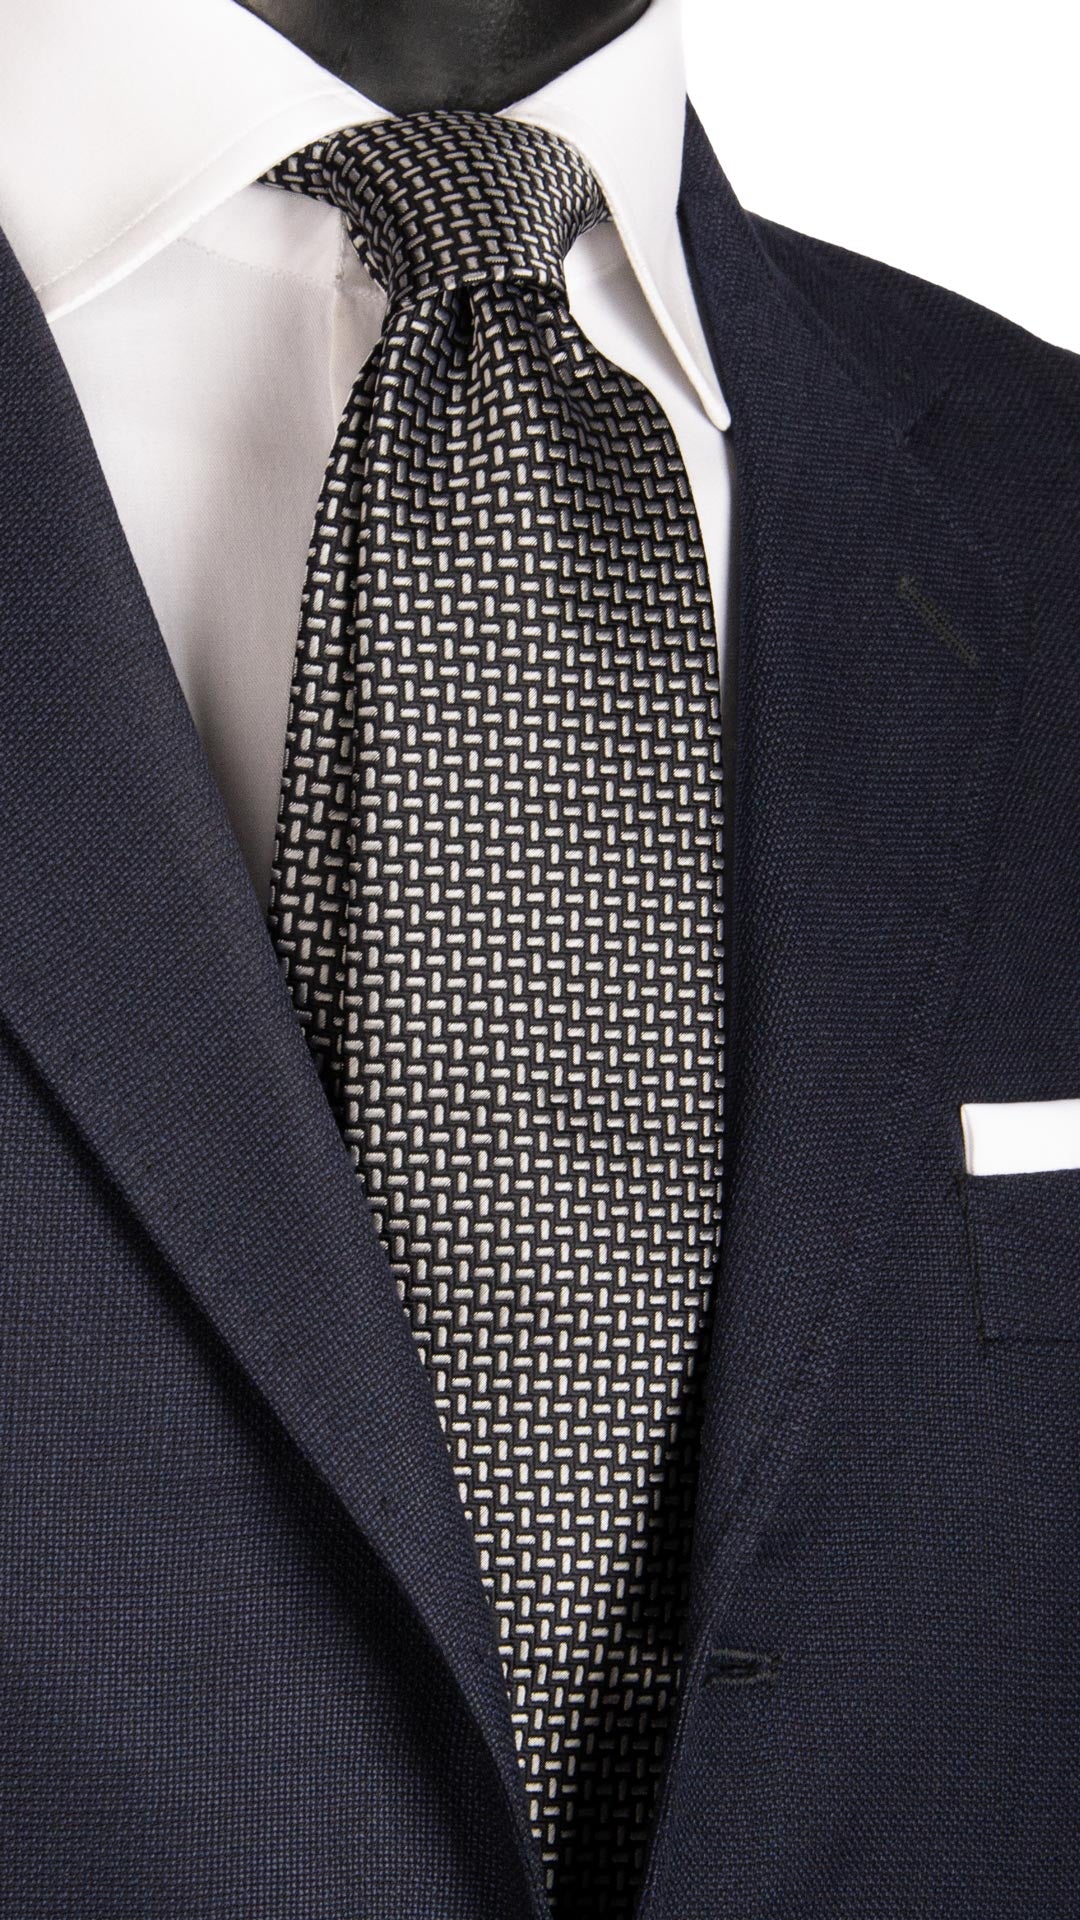 Cravatta da Cerimonia di Seta Blu Fantasia Grigio Argento CY6662 Made in Italy Graffeo Cravatte